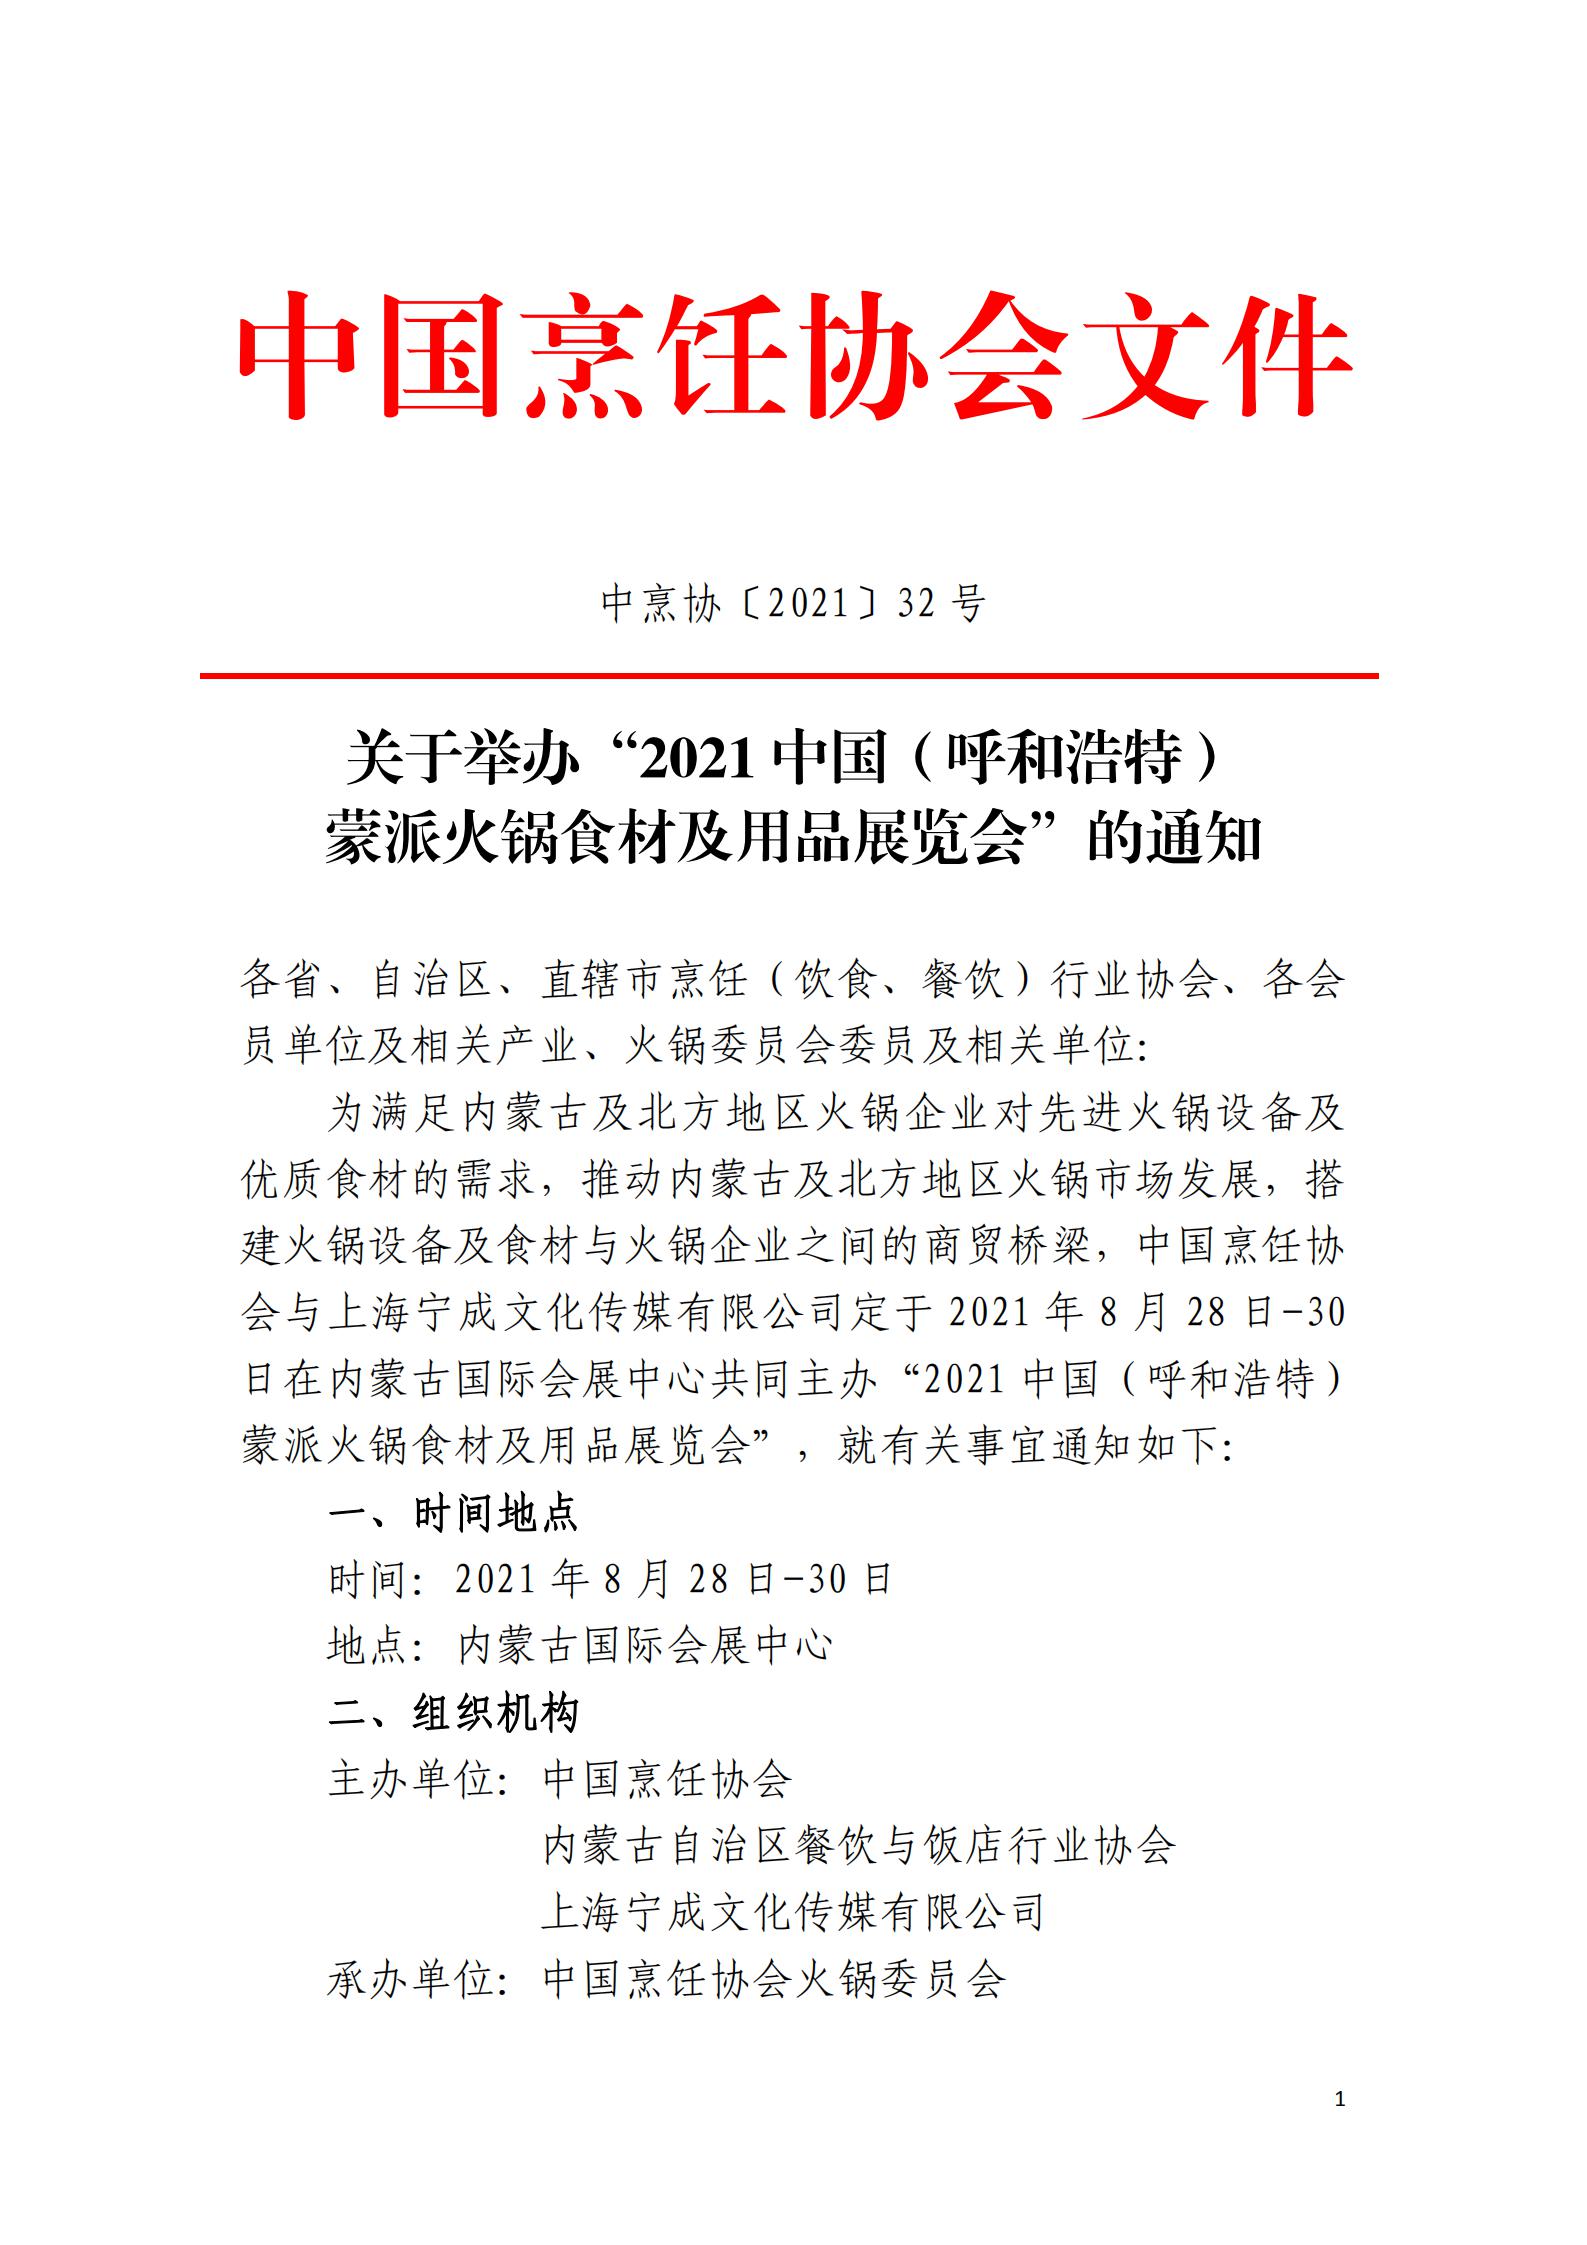 关于举办“2021中国（呼和浩特）蒙派火锅食材及用品展览会”的通知(1)_00.jpg